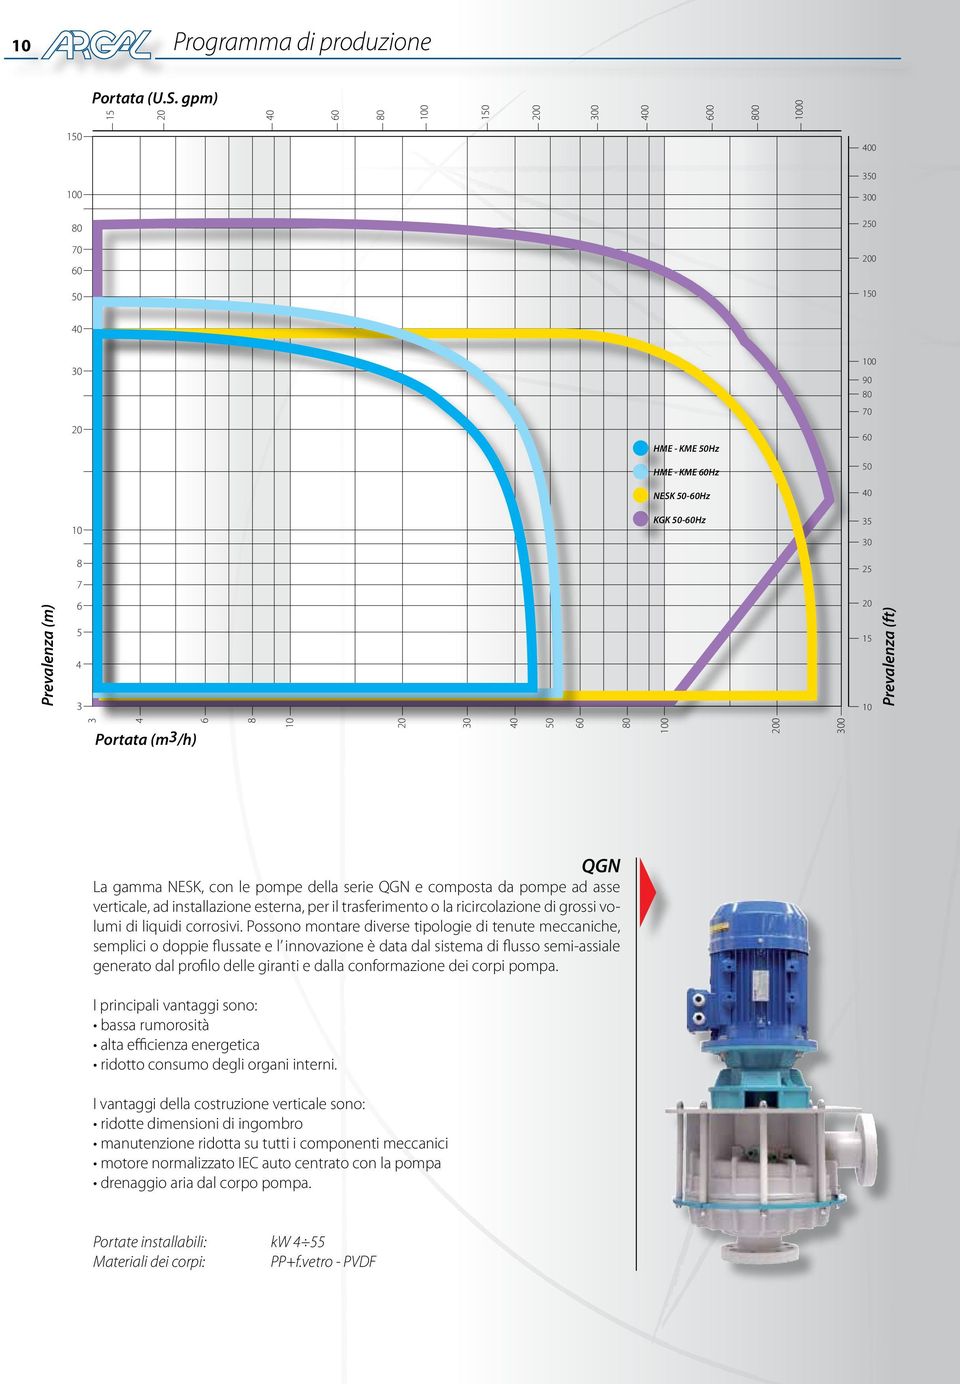 della serie QGN e composta da pompe ad asse verticale, ad installazione esterna, per il trasferimento o la ricircolazione di grossi volumi di liquidi corrosivi.